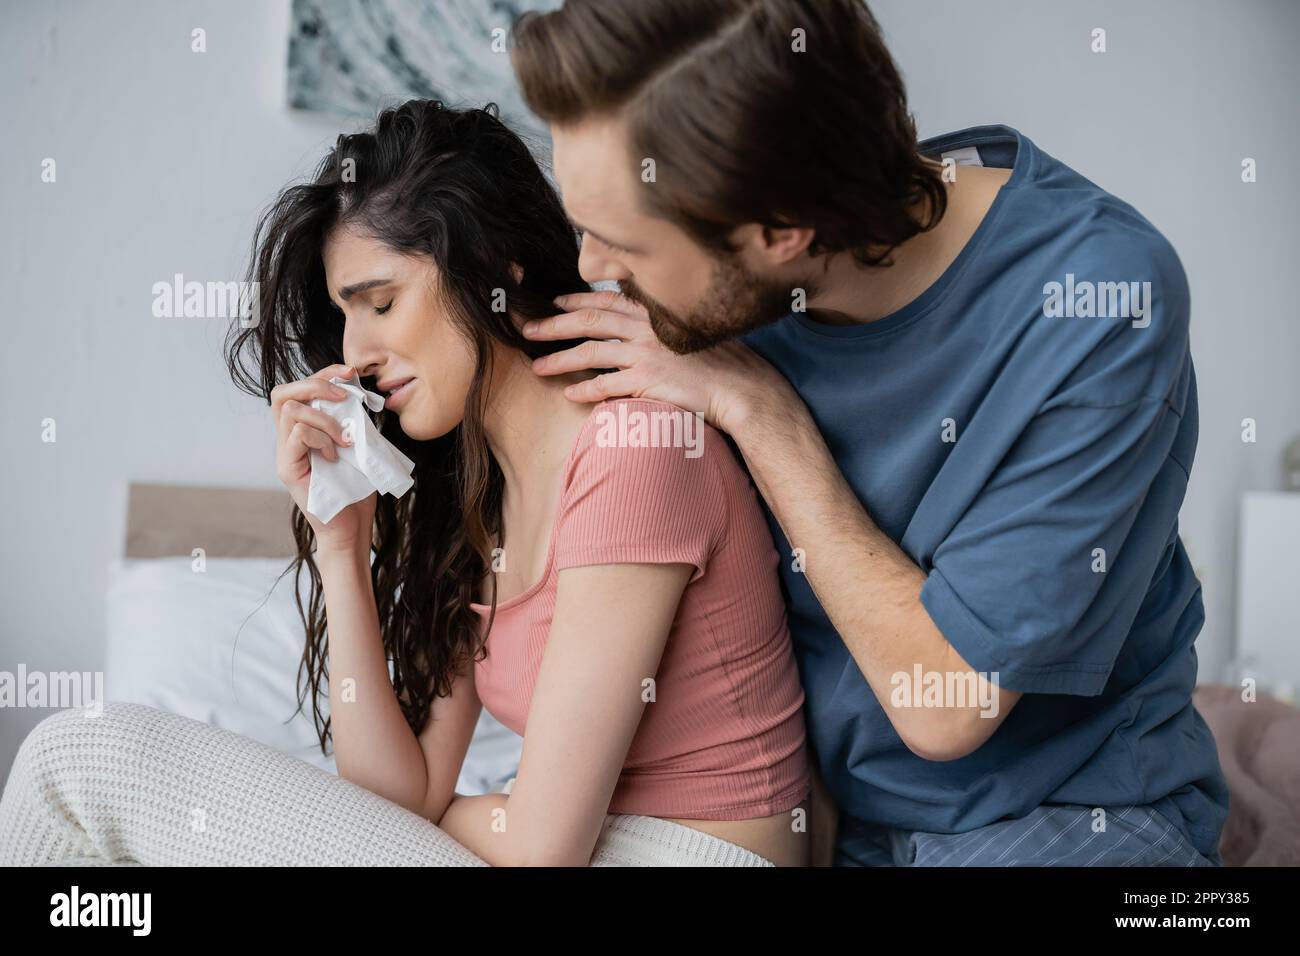 Uomo attento in pajama abbracciando ragazza piangente con tovagliolo in camera da letto, immagine stock Foto Stock